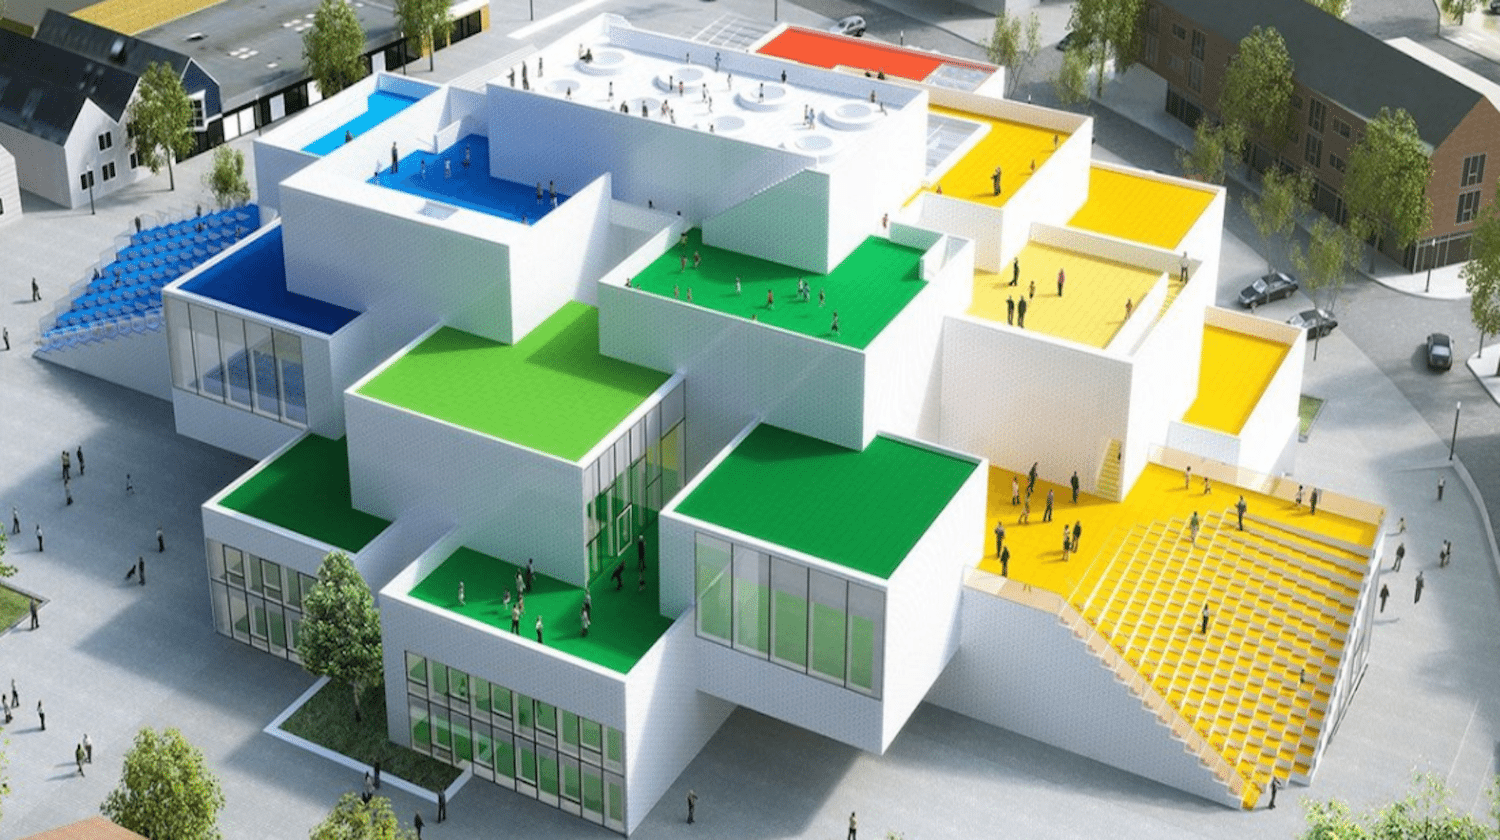 LEGO House in Denmark is set to open September